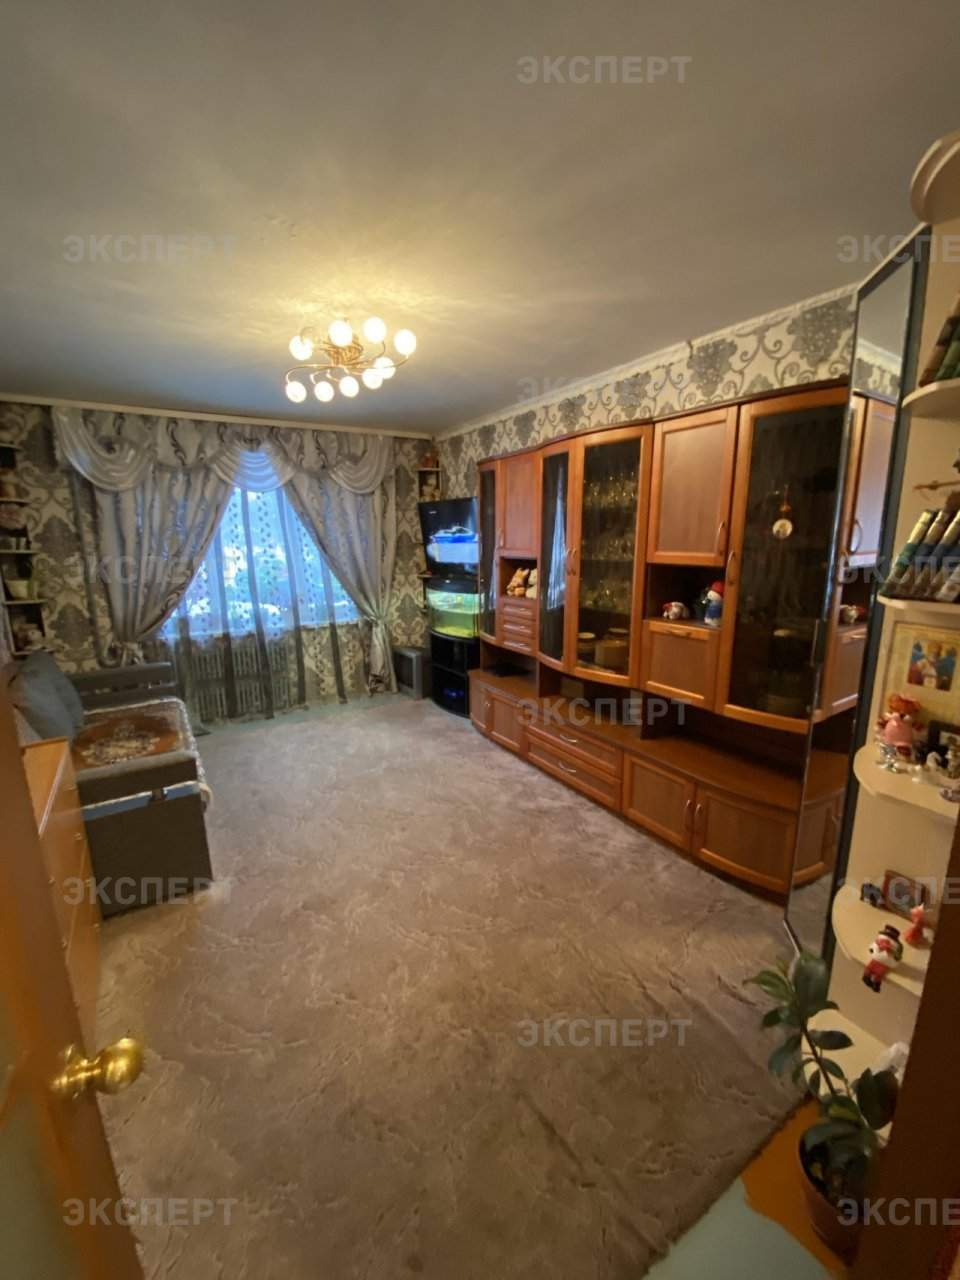 Продажа 3-комнатной квартиры, Великий Новгород, Кочетова улица,  д.19